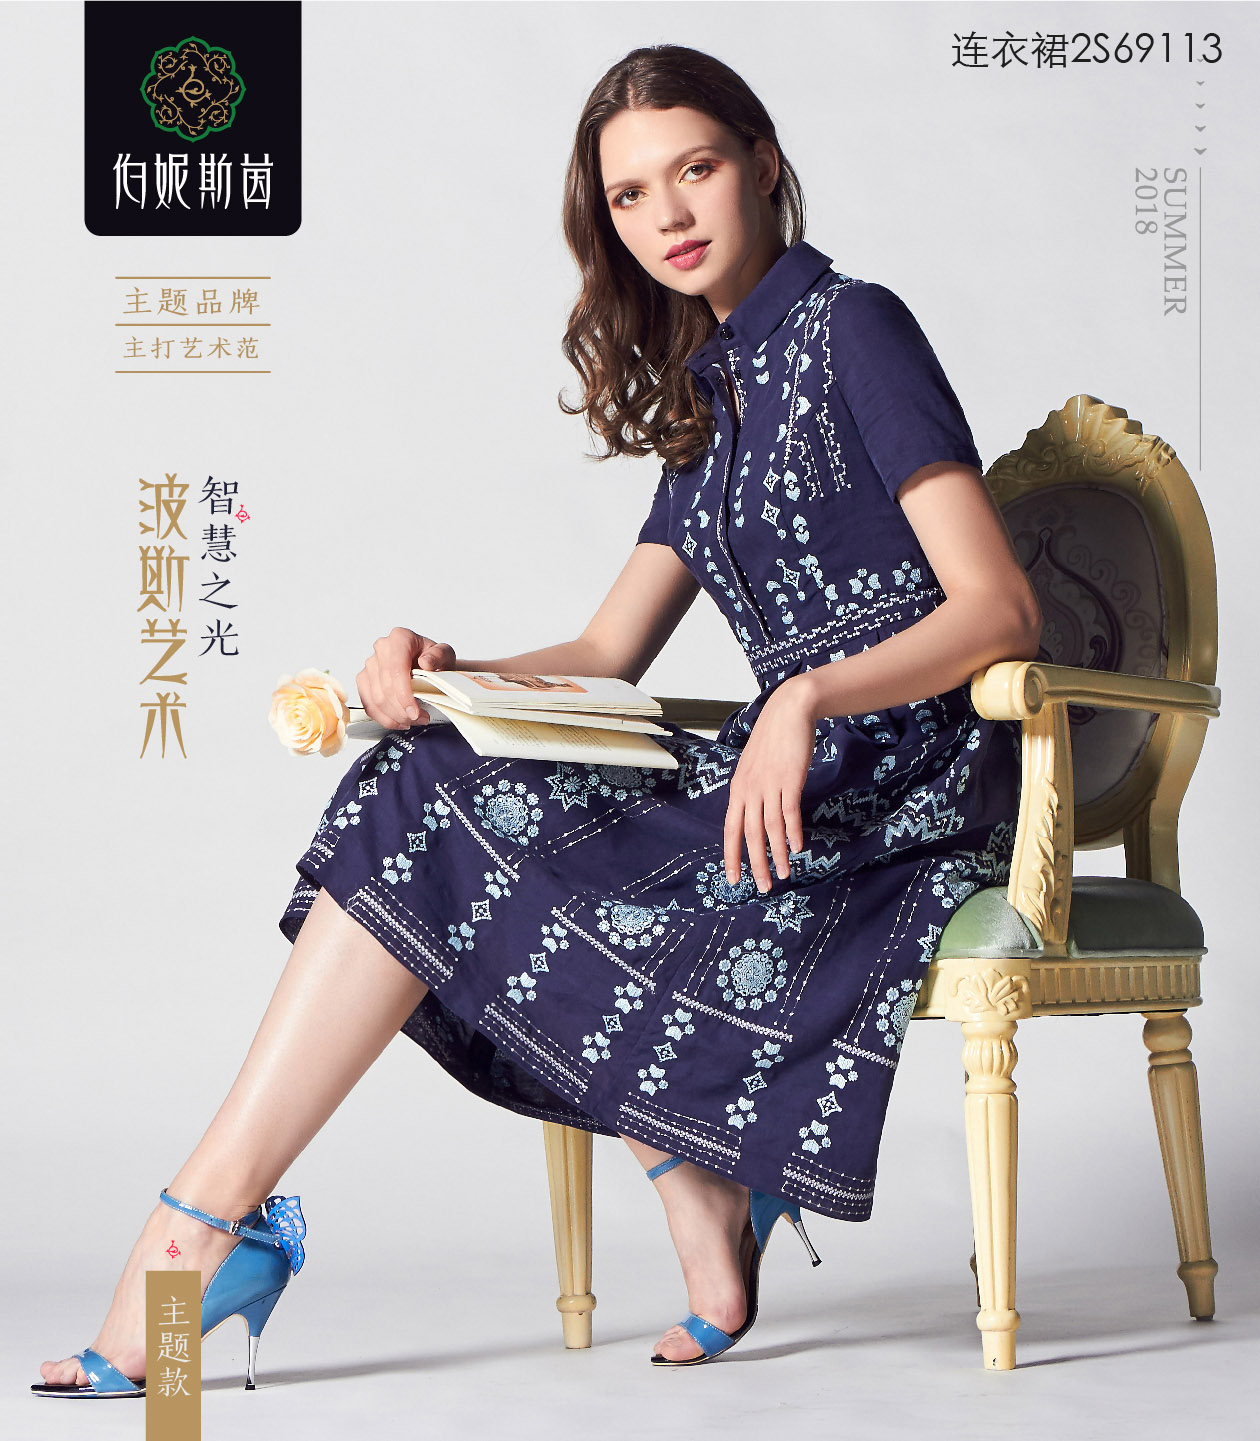 【伯妮斯茵】蓝色连衣裙--玫瑰王宫--《智慧之光--波斯艺术》2S69113